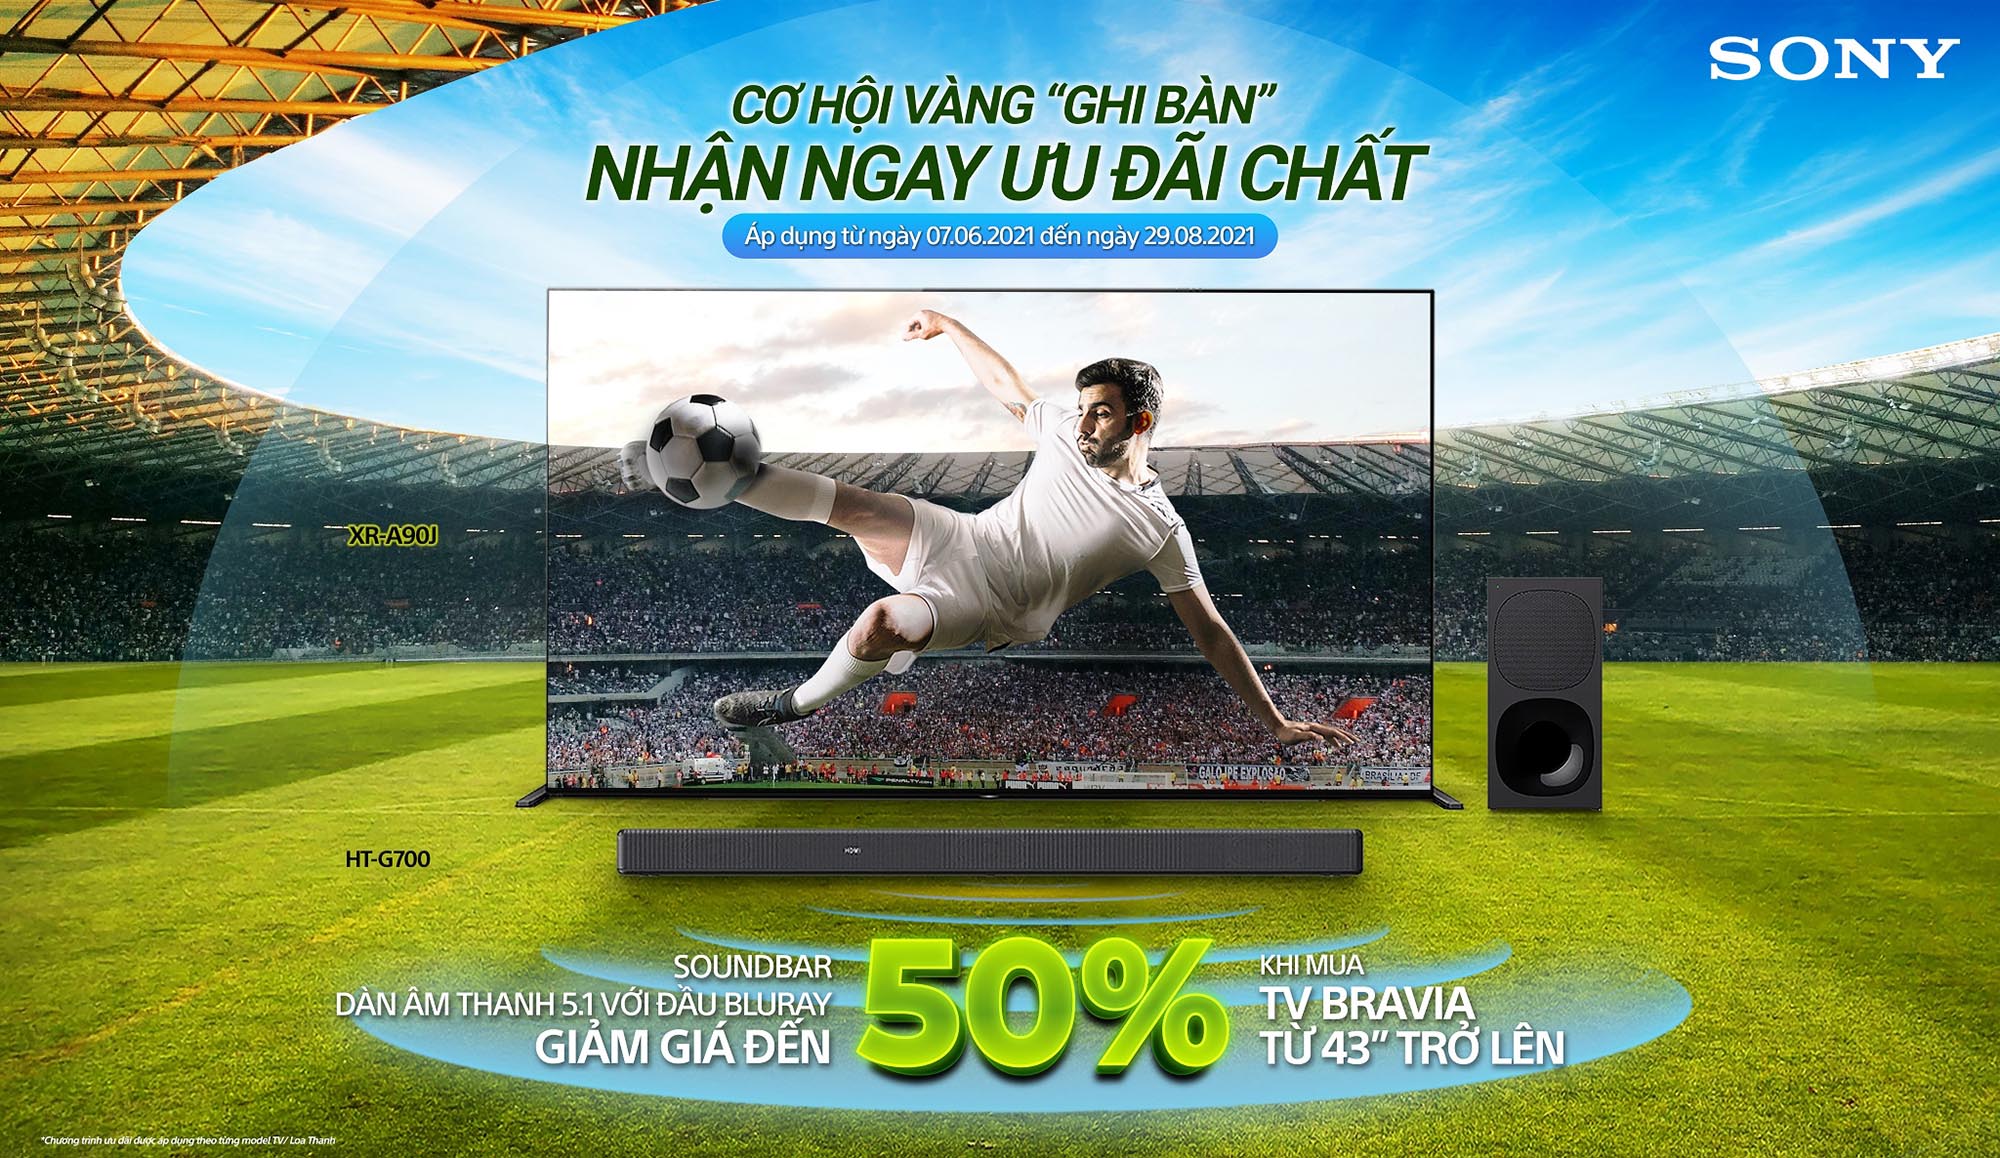 Sony Việt Nam ra mắt chương trình khuyến mãi hấp dẫn chào đón giải vô địch bóng đá Châu Âu 2021